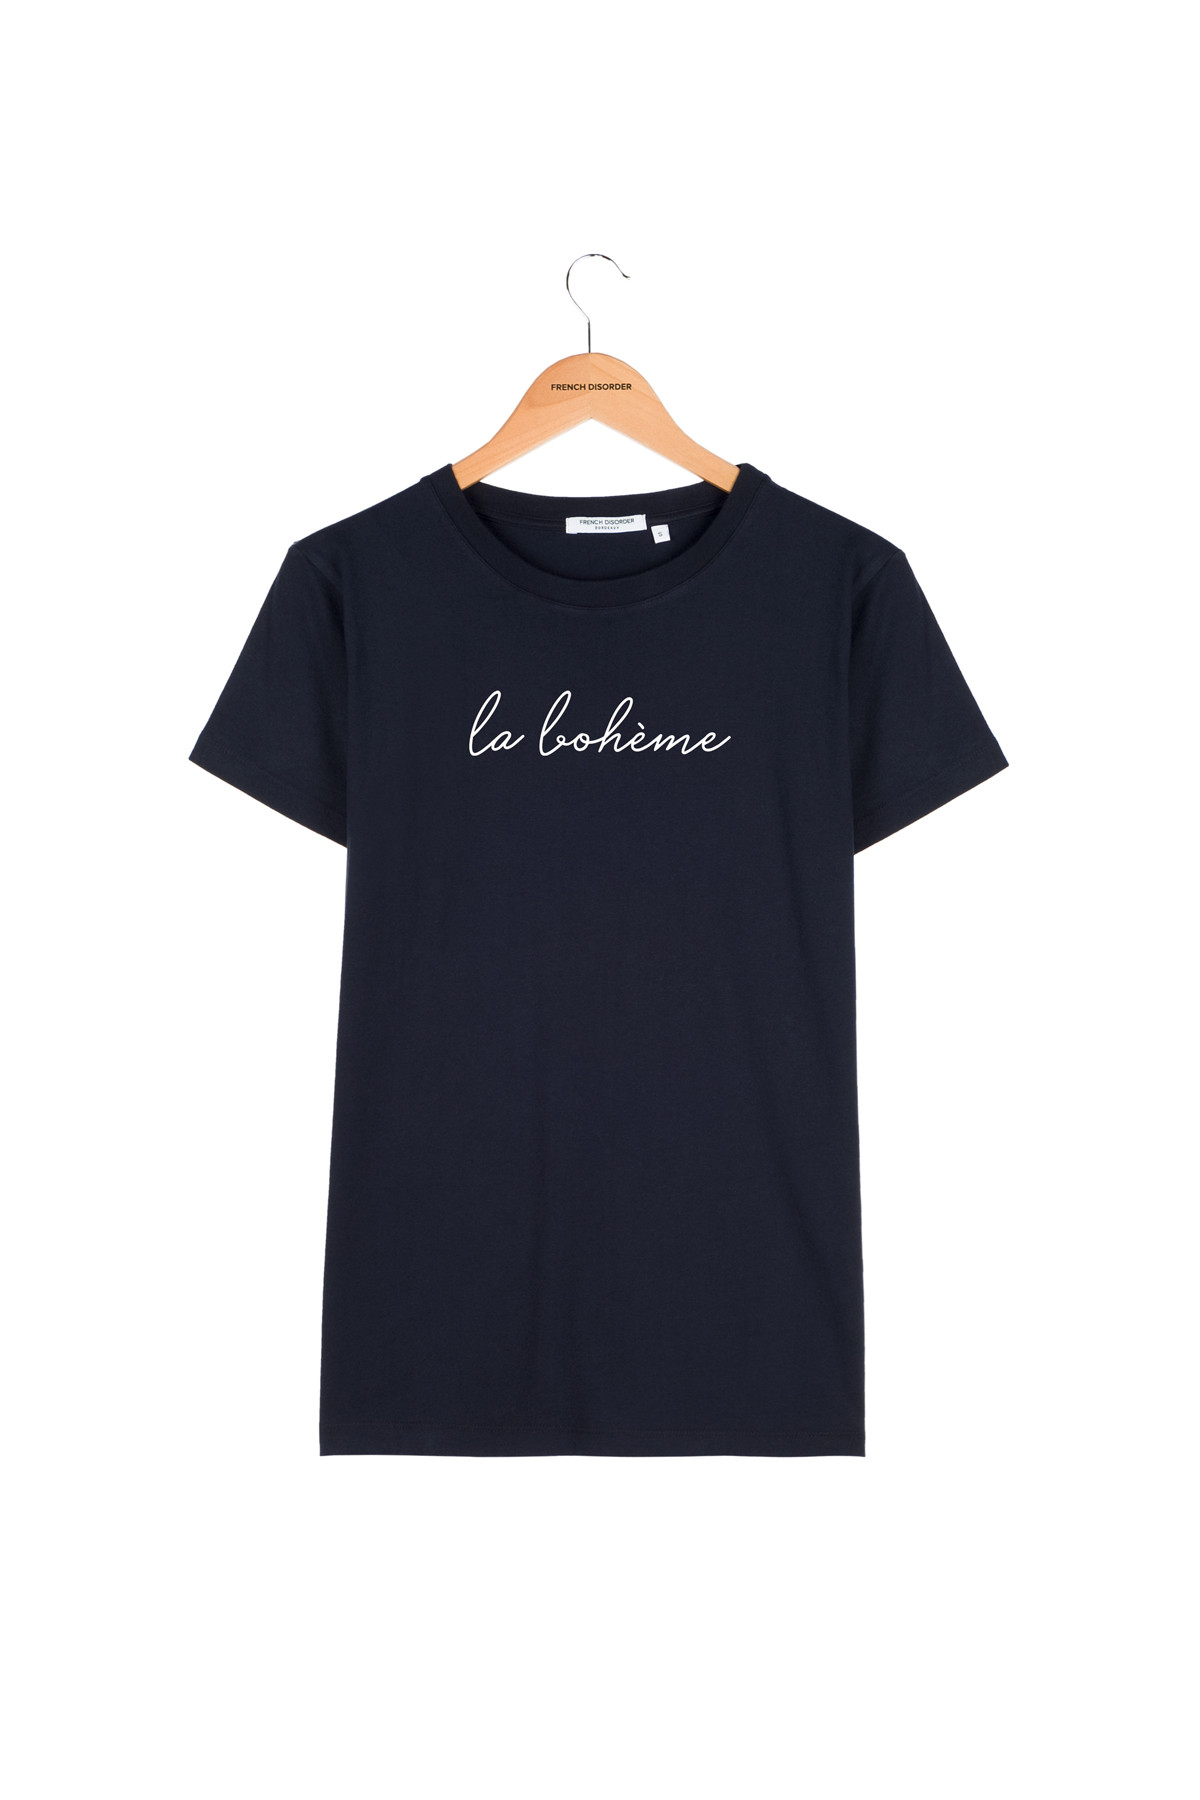 T-shirt Alex LA BOHEME (W)